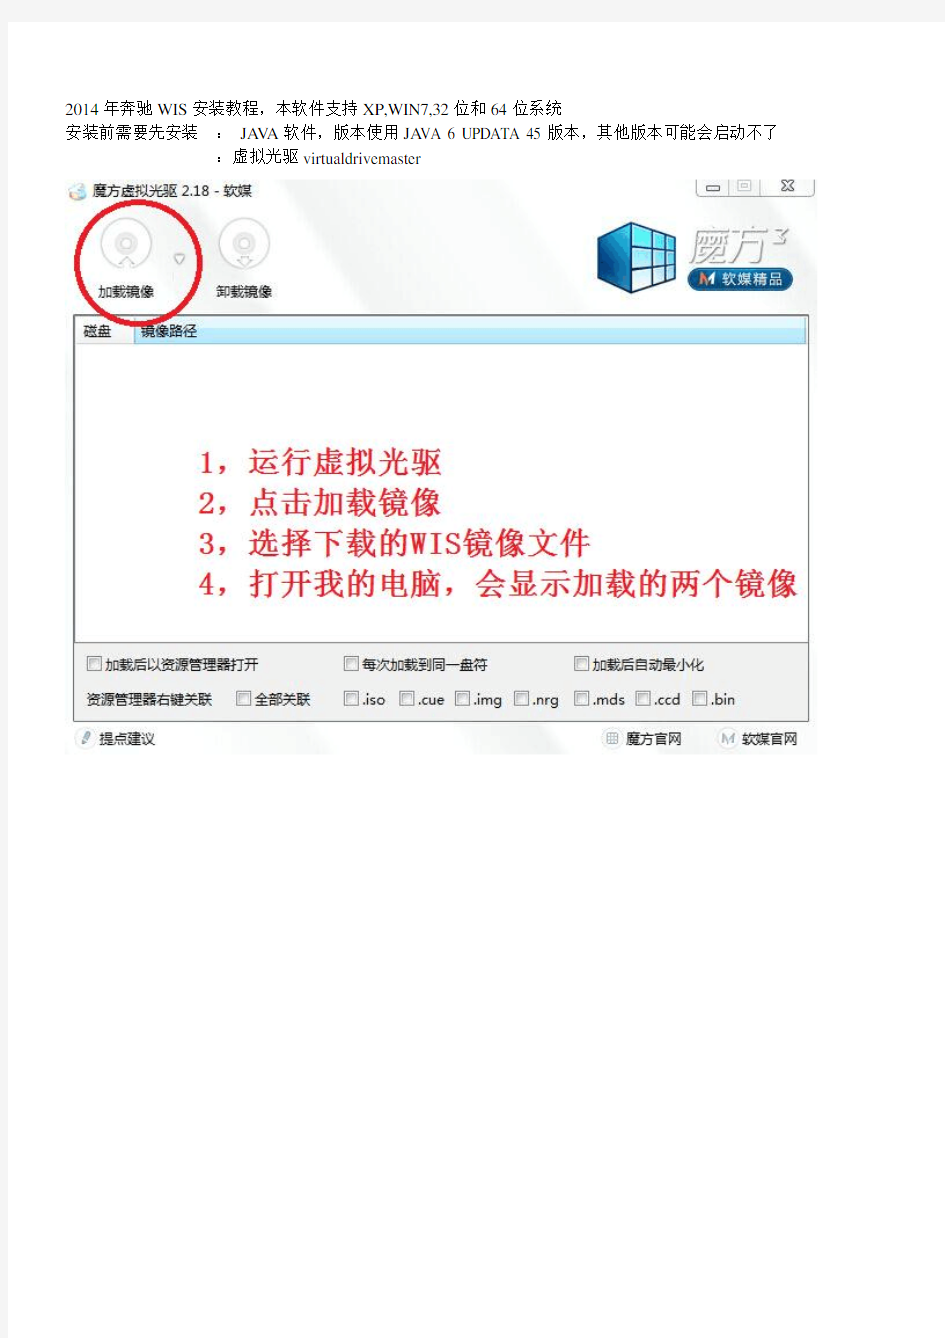 奔驰WIS原厂维修手册软件安装教程2014